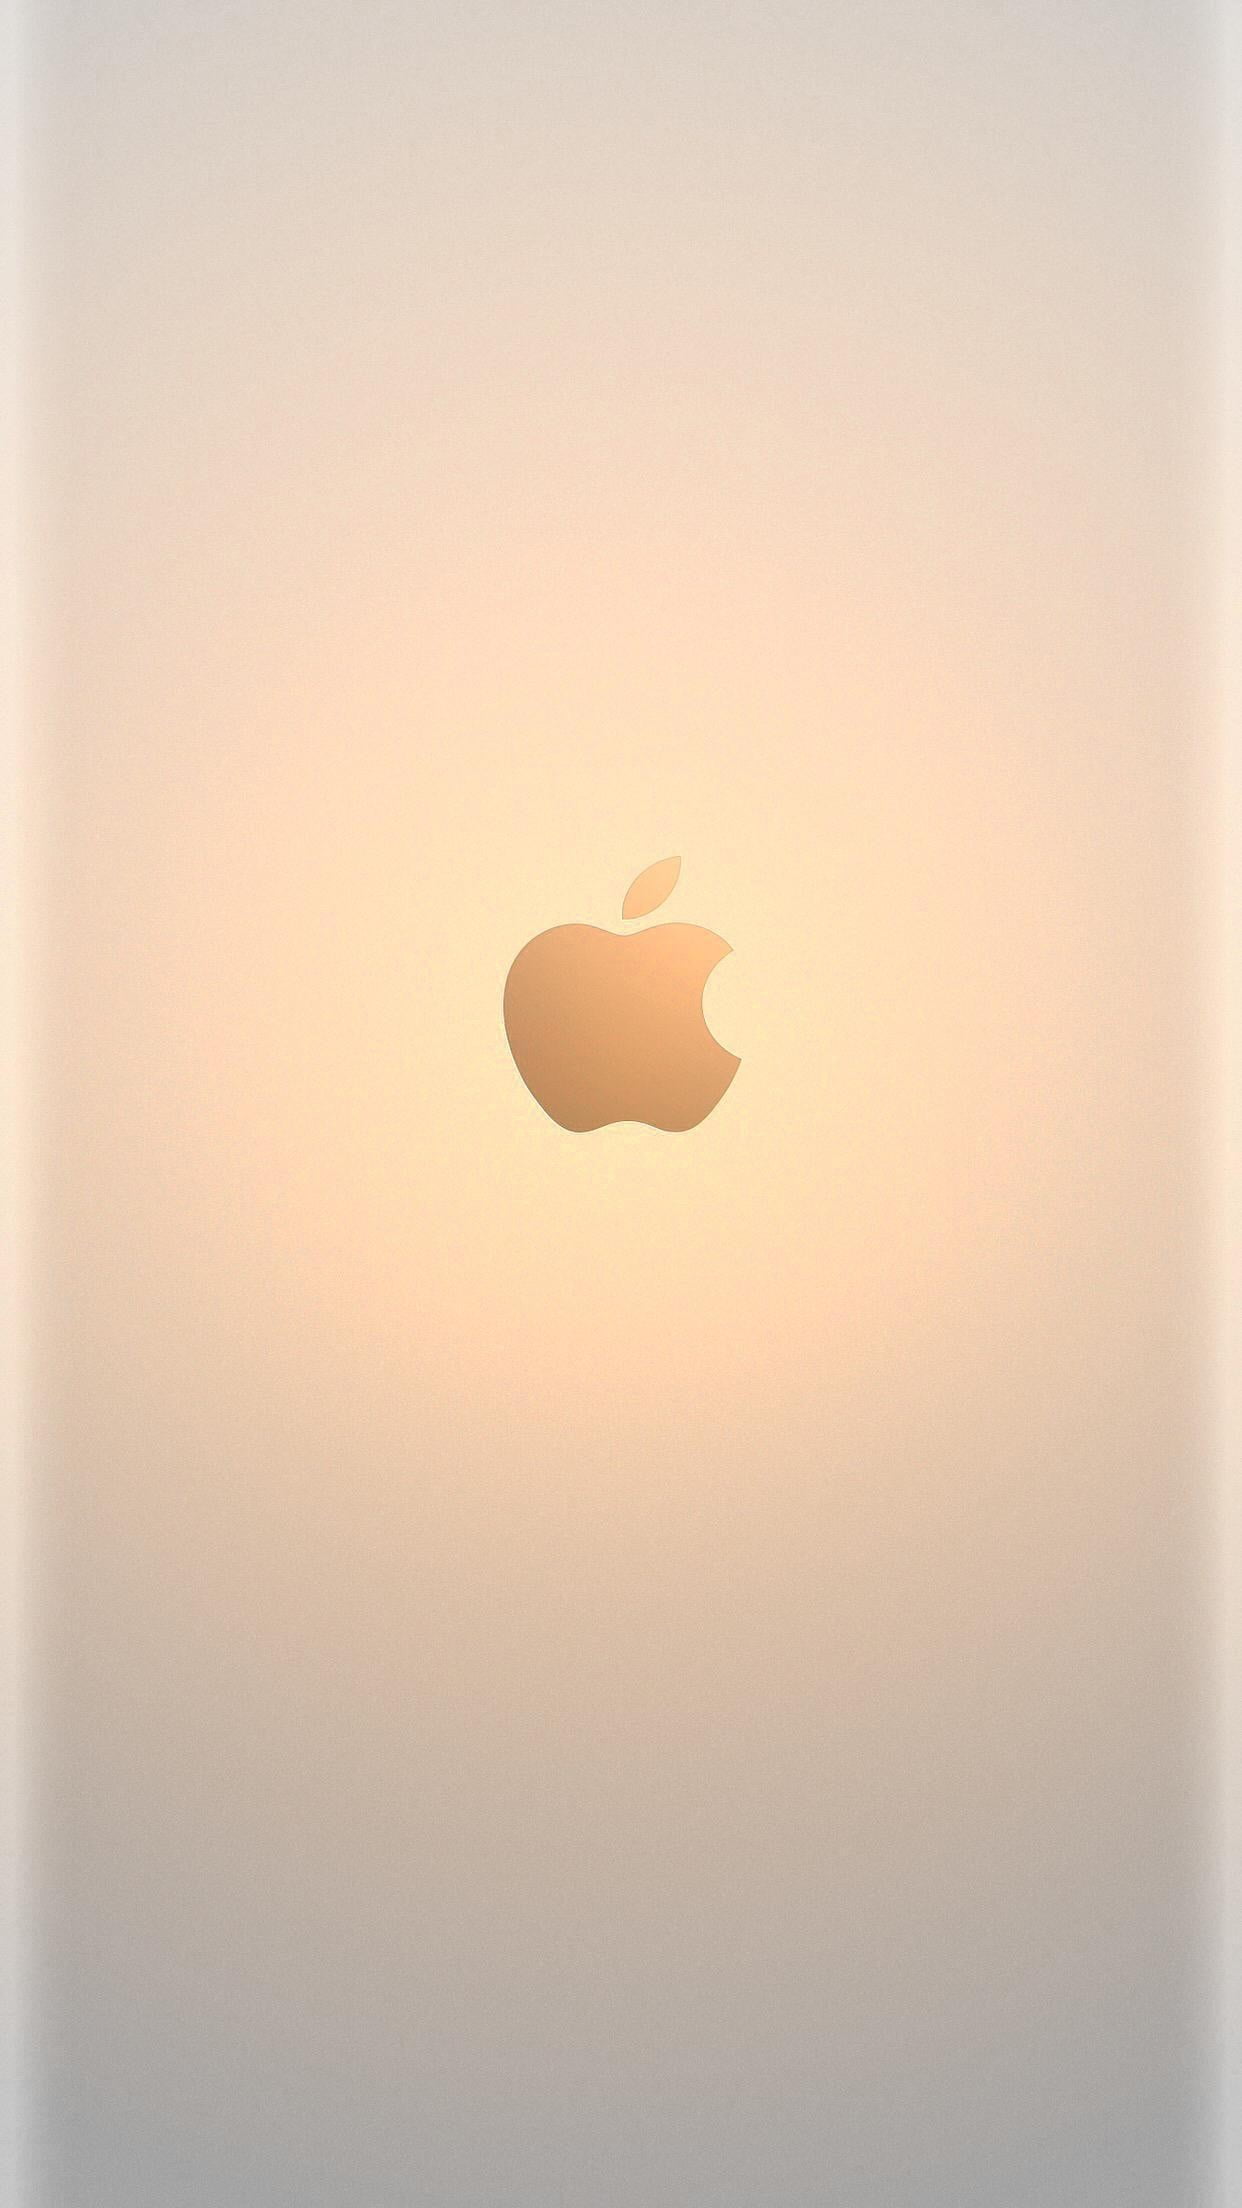 アップルロゴ 淡いゴールド Iphone Wallpapers